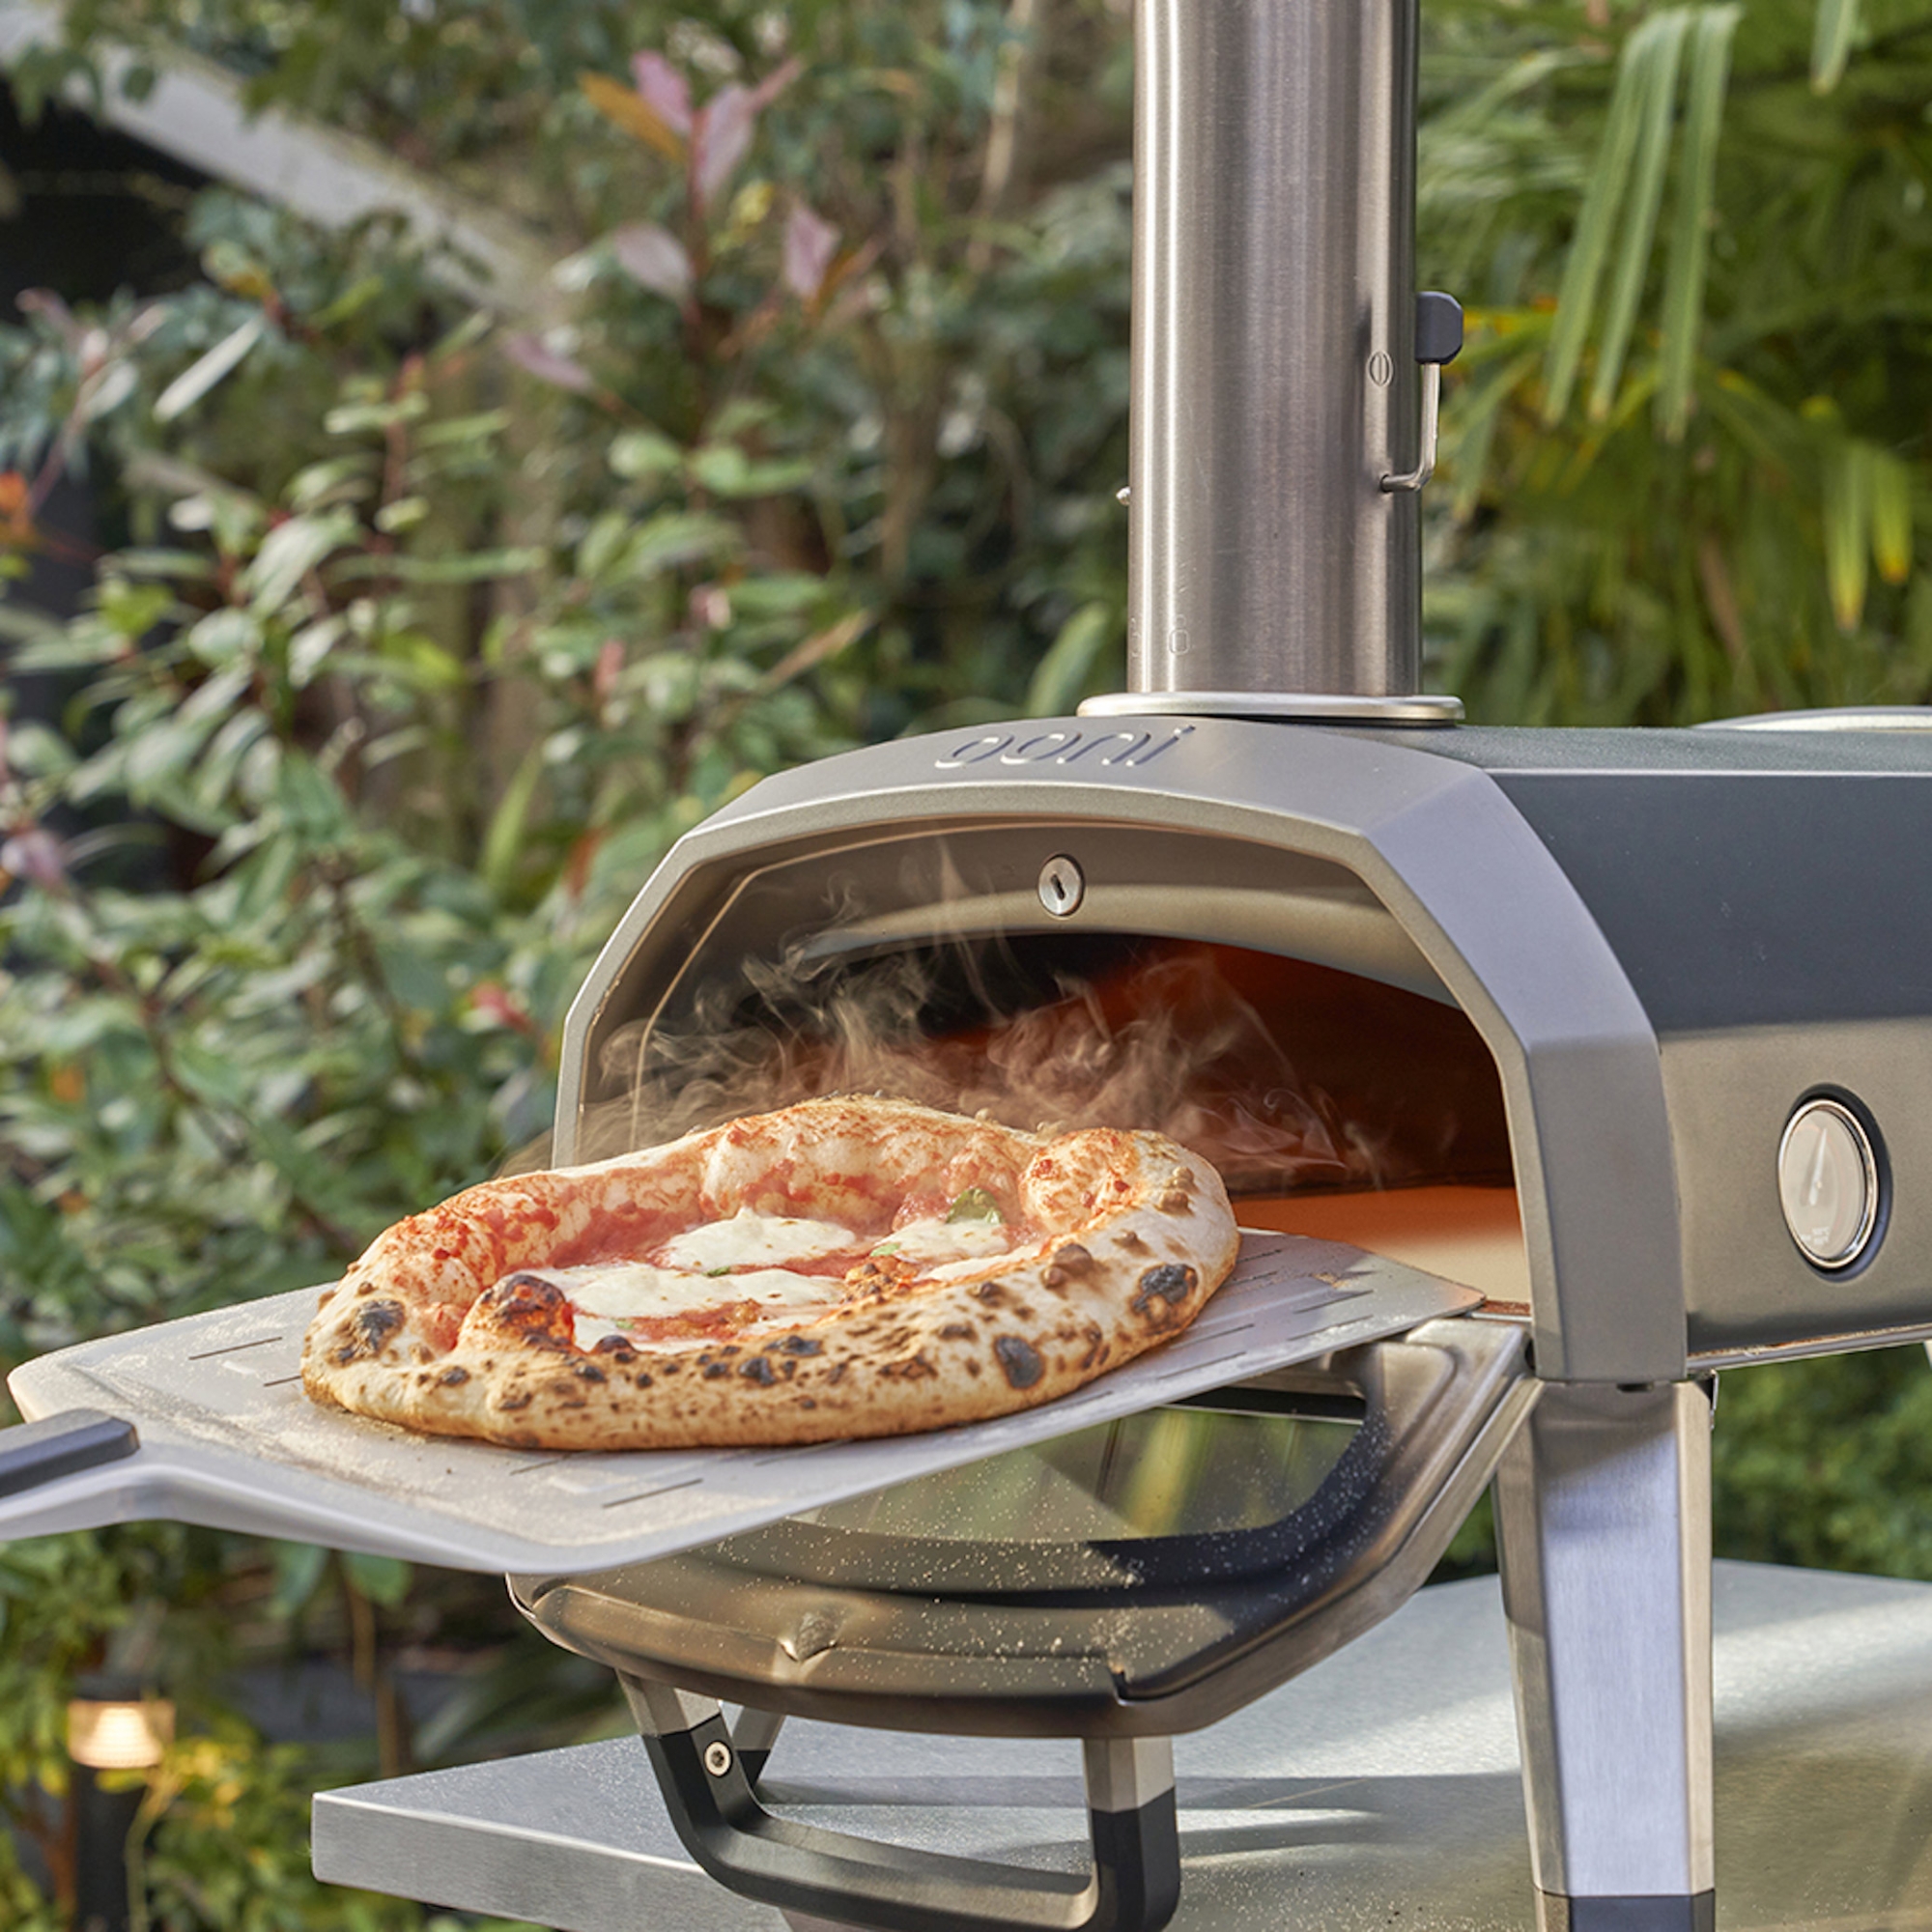 Ooni Volt 12 forno elettrico per pizza da interno: come funziona